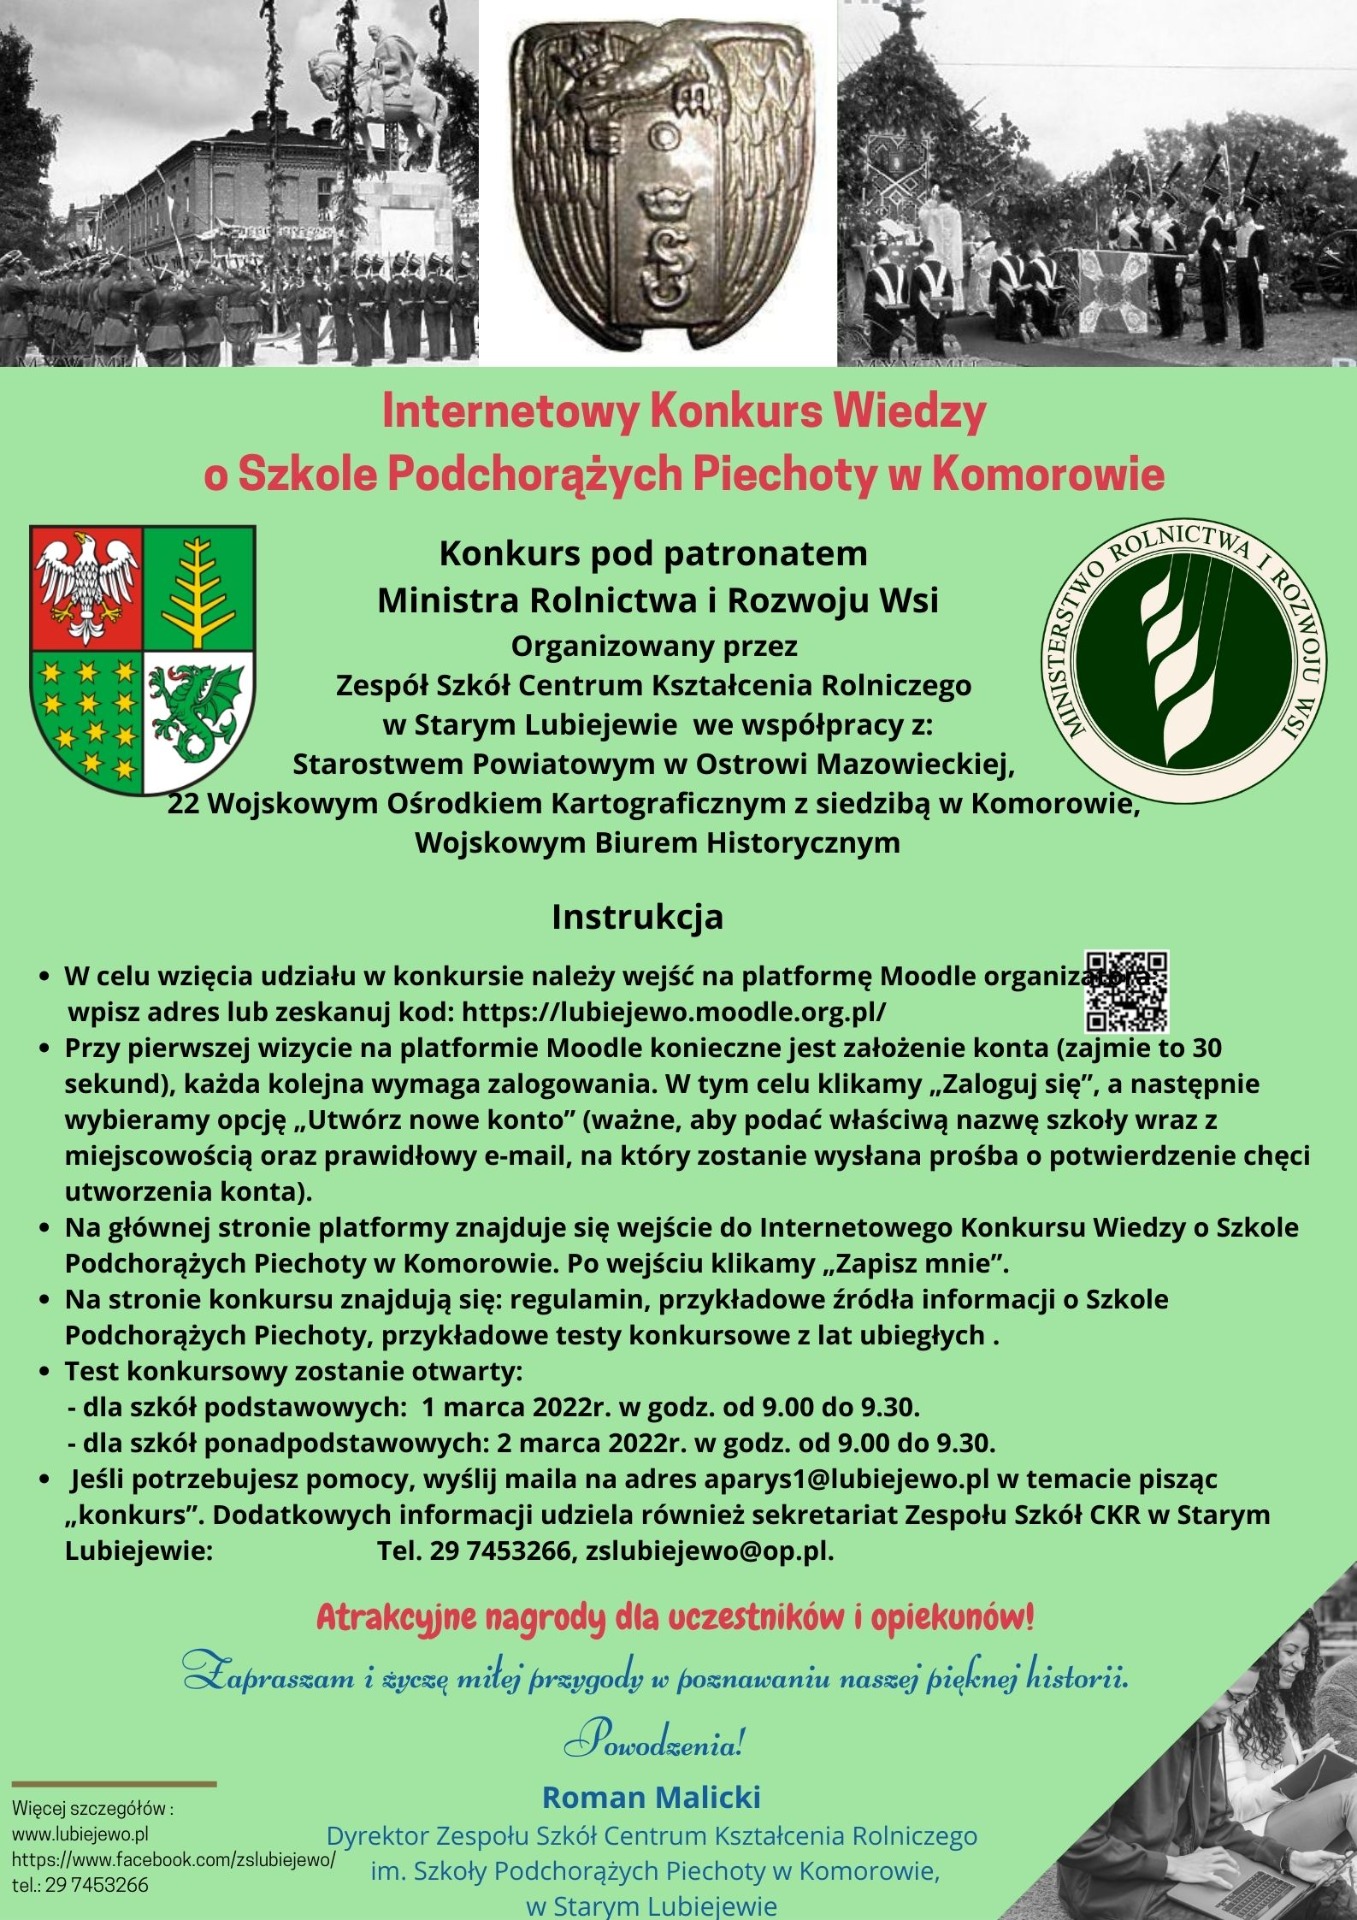 Internetowy Konkurs Wiedzy o Szkole Podchorążych Piechoty w Komorowie - Obrazek 1